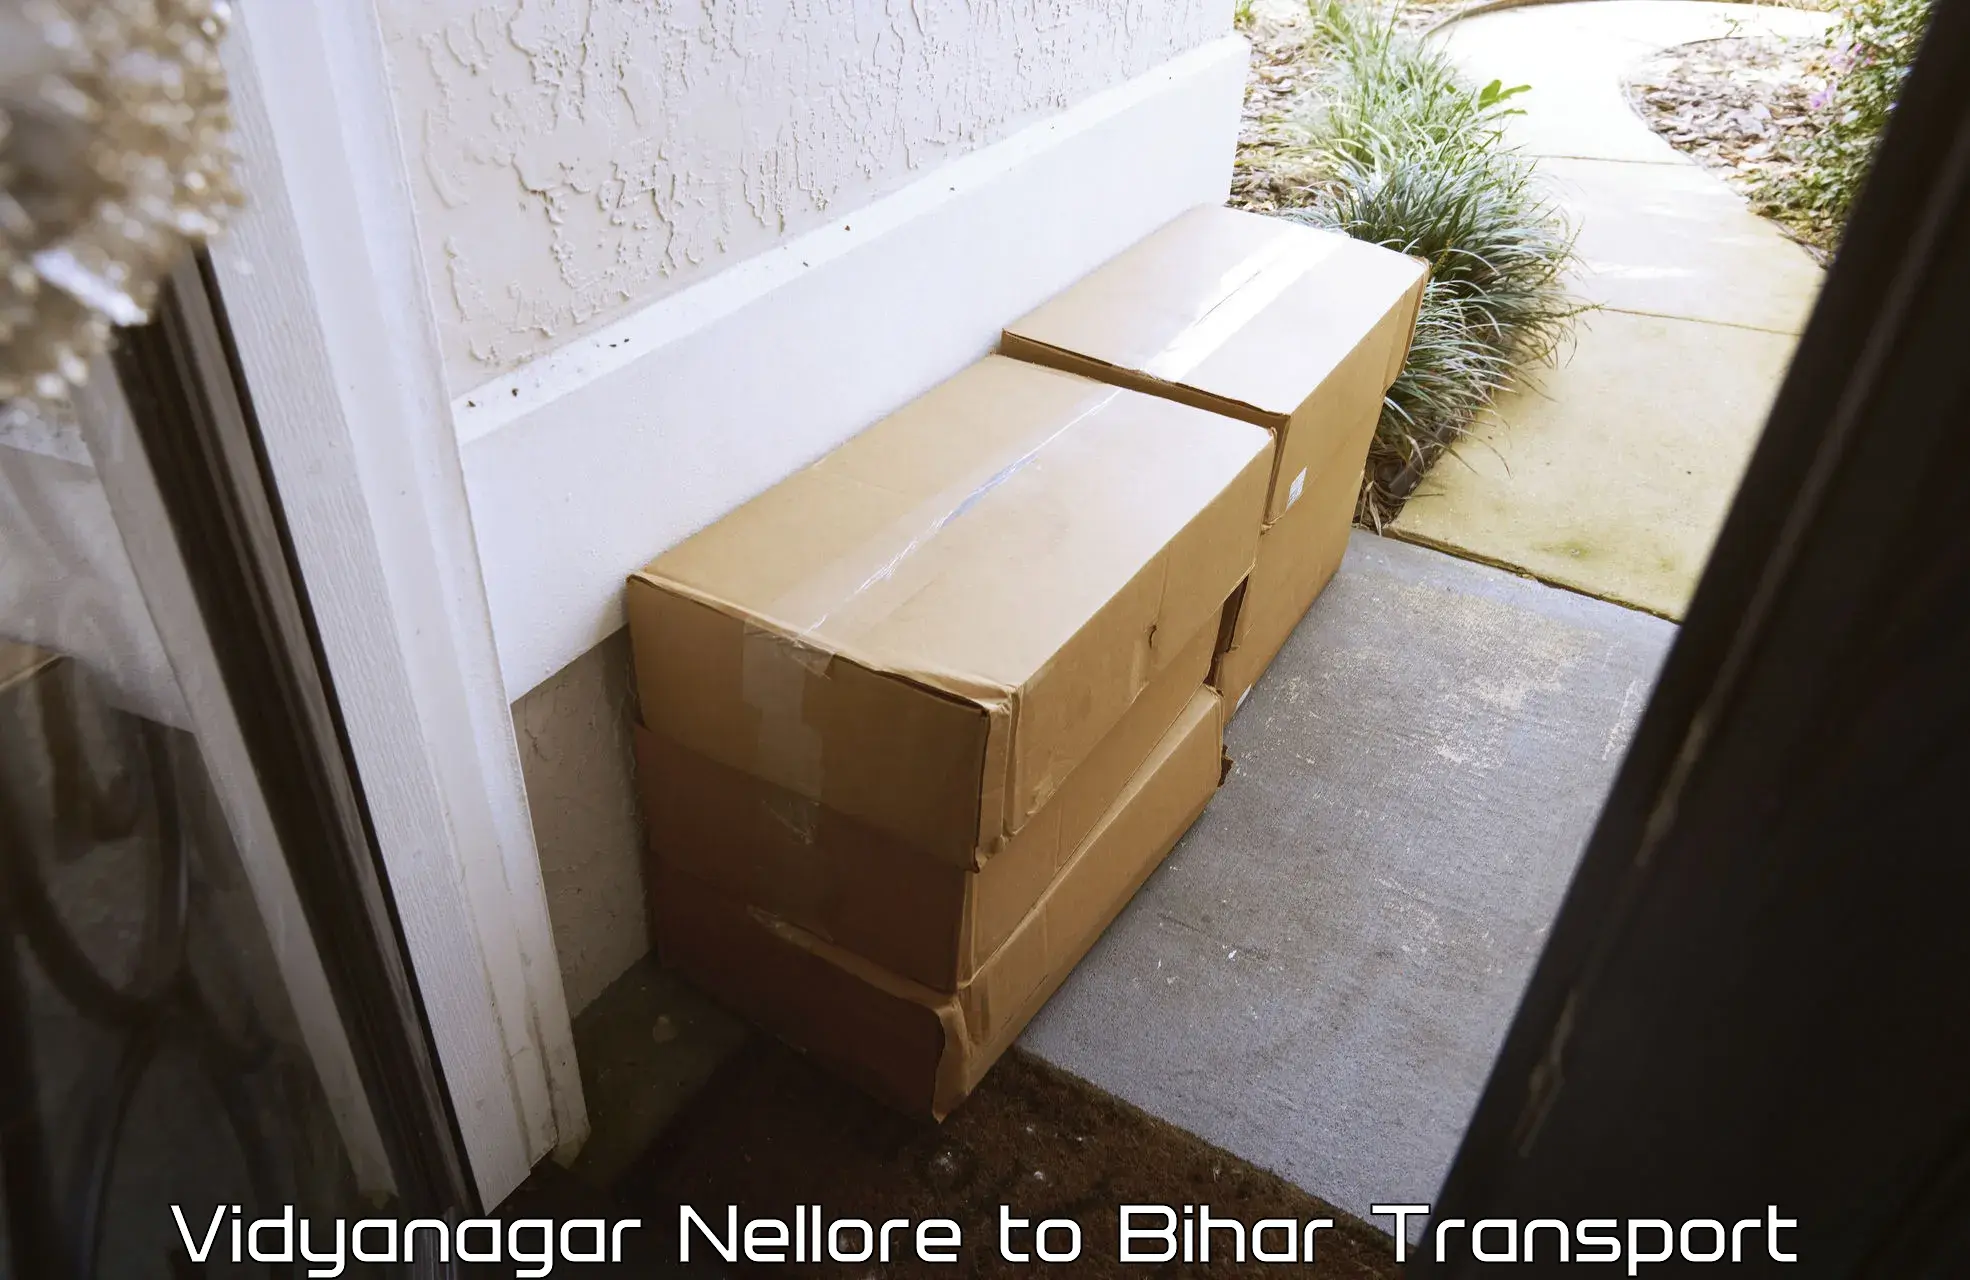 Cargo train transport services Vidyanagar Nellore to Bihar